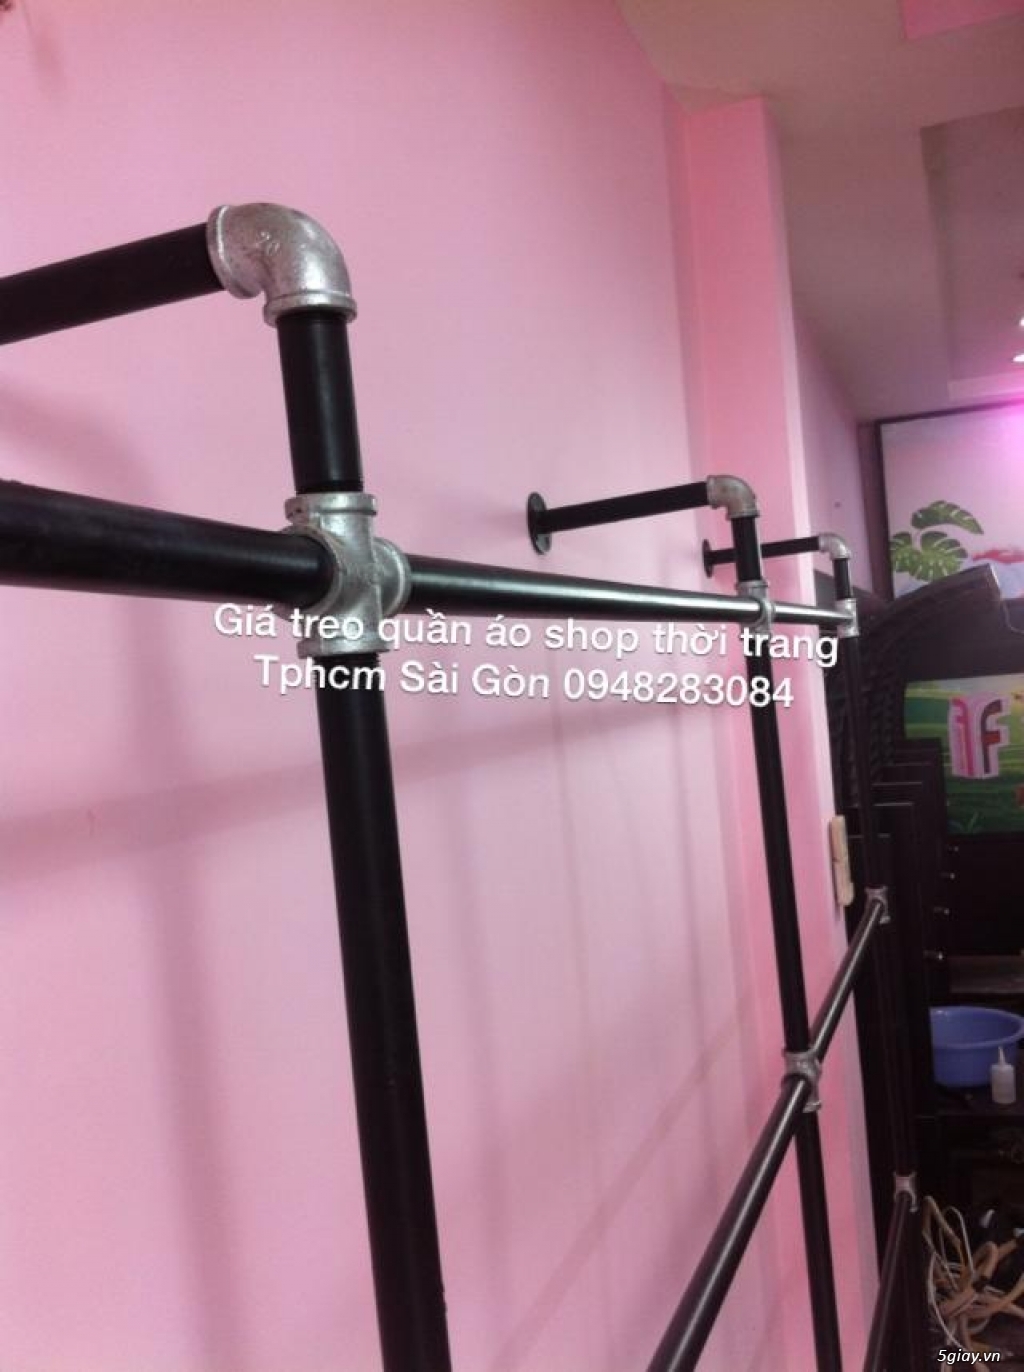 Sào Treo Quần áo shop - ống nước sắt - Thiết kế lắp đặt Tphcm Sài Gòn - 1